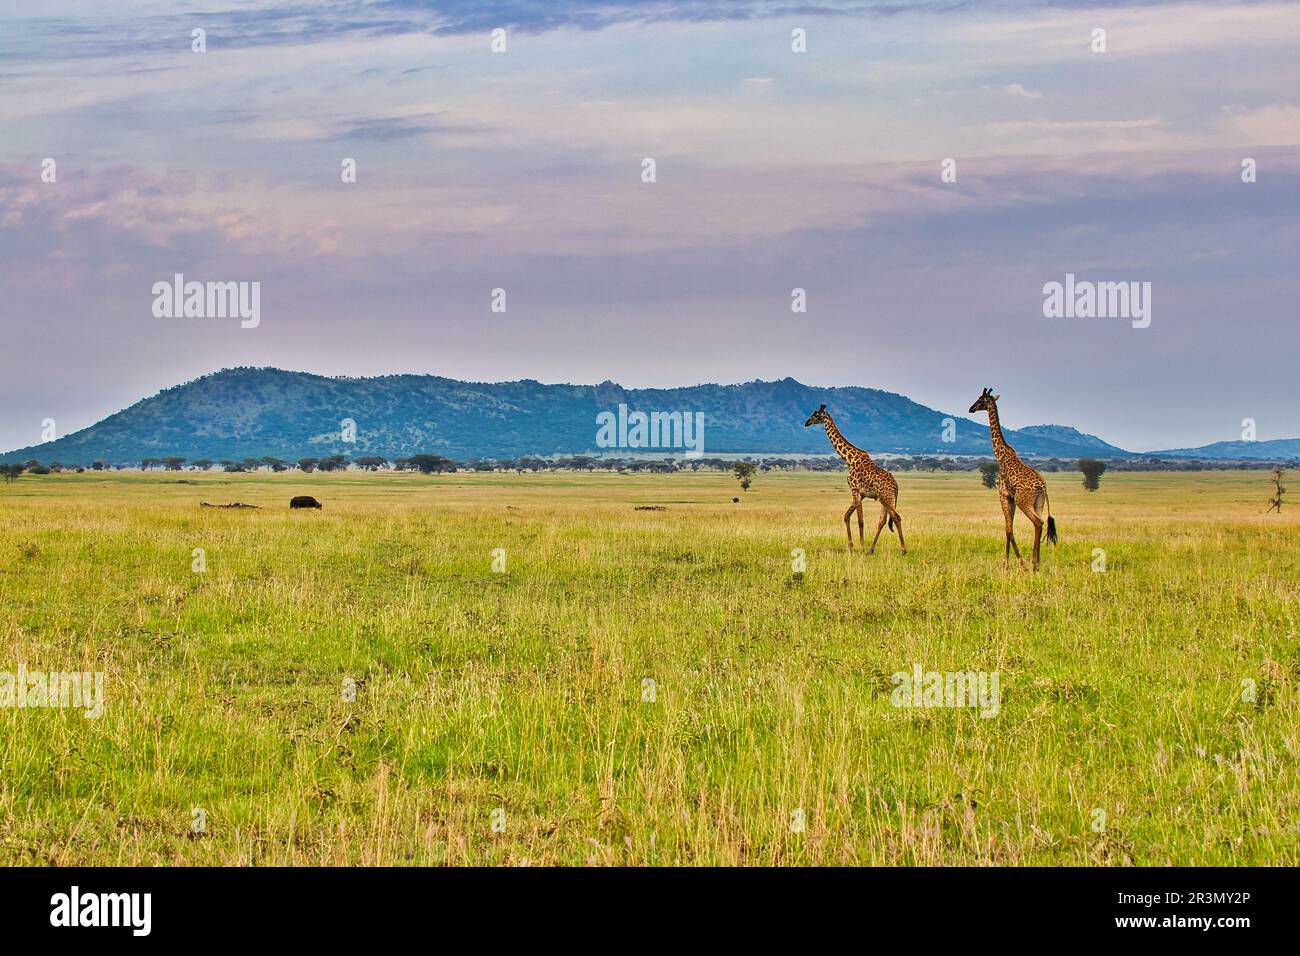 Giraffe pair close up at Serengeti National Park, Tanzania Stock Photo